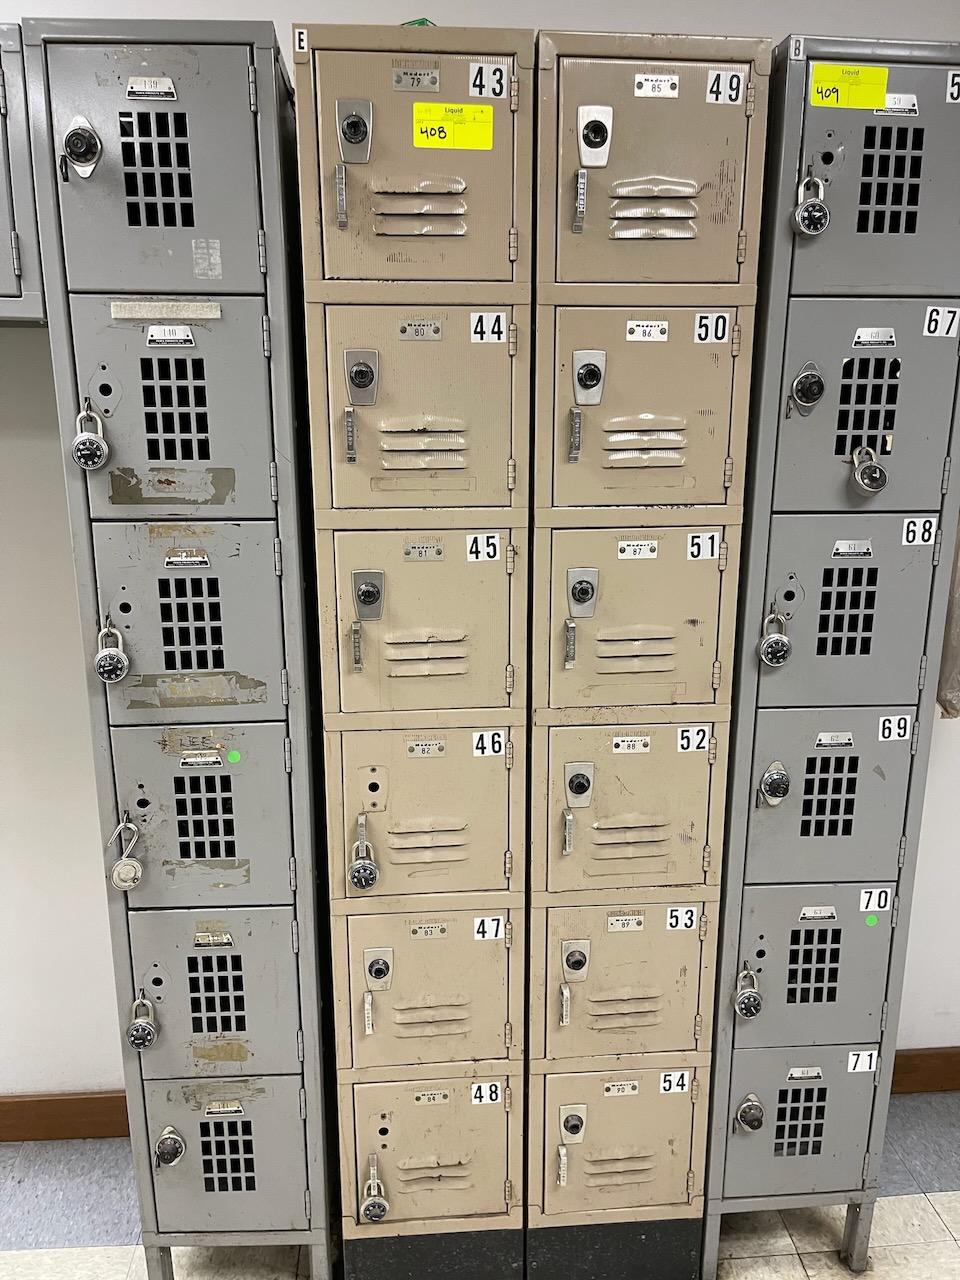 Lockers (54)  - 12"x12"x18" Holes - Gray